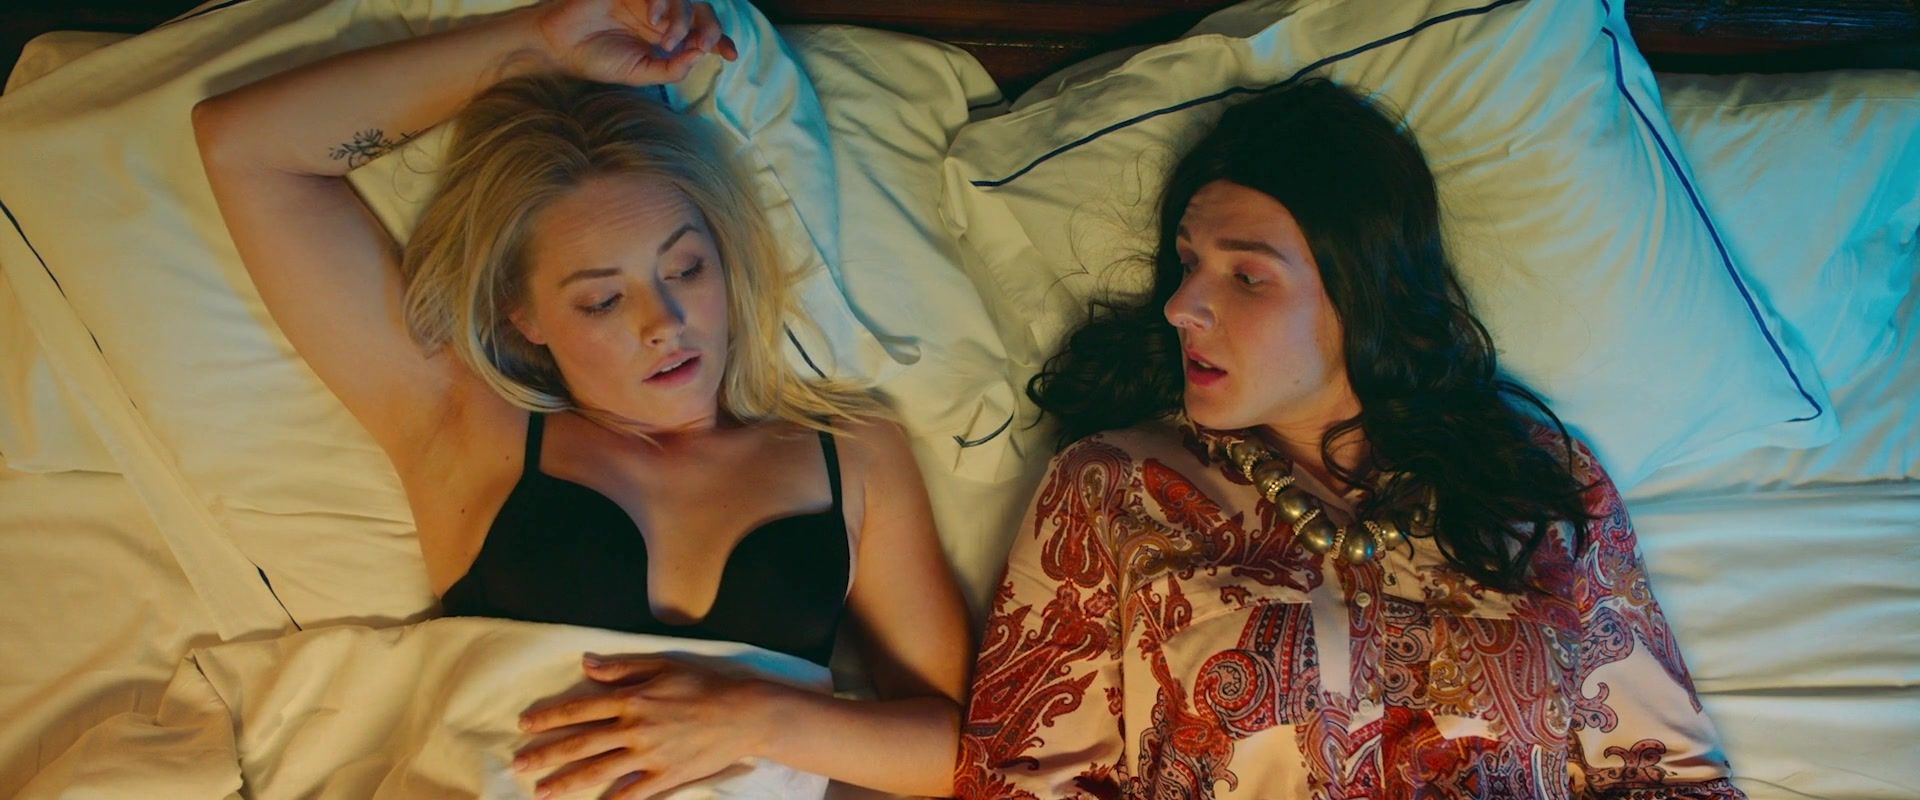 Cfnm Nude Alena Chehova, Zoya Berber - Devushki byvayut raznye (2019) Movie Scenes 18 Year Old - 1